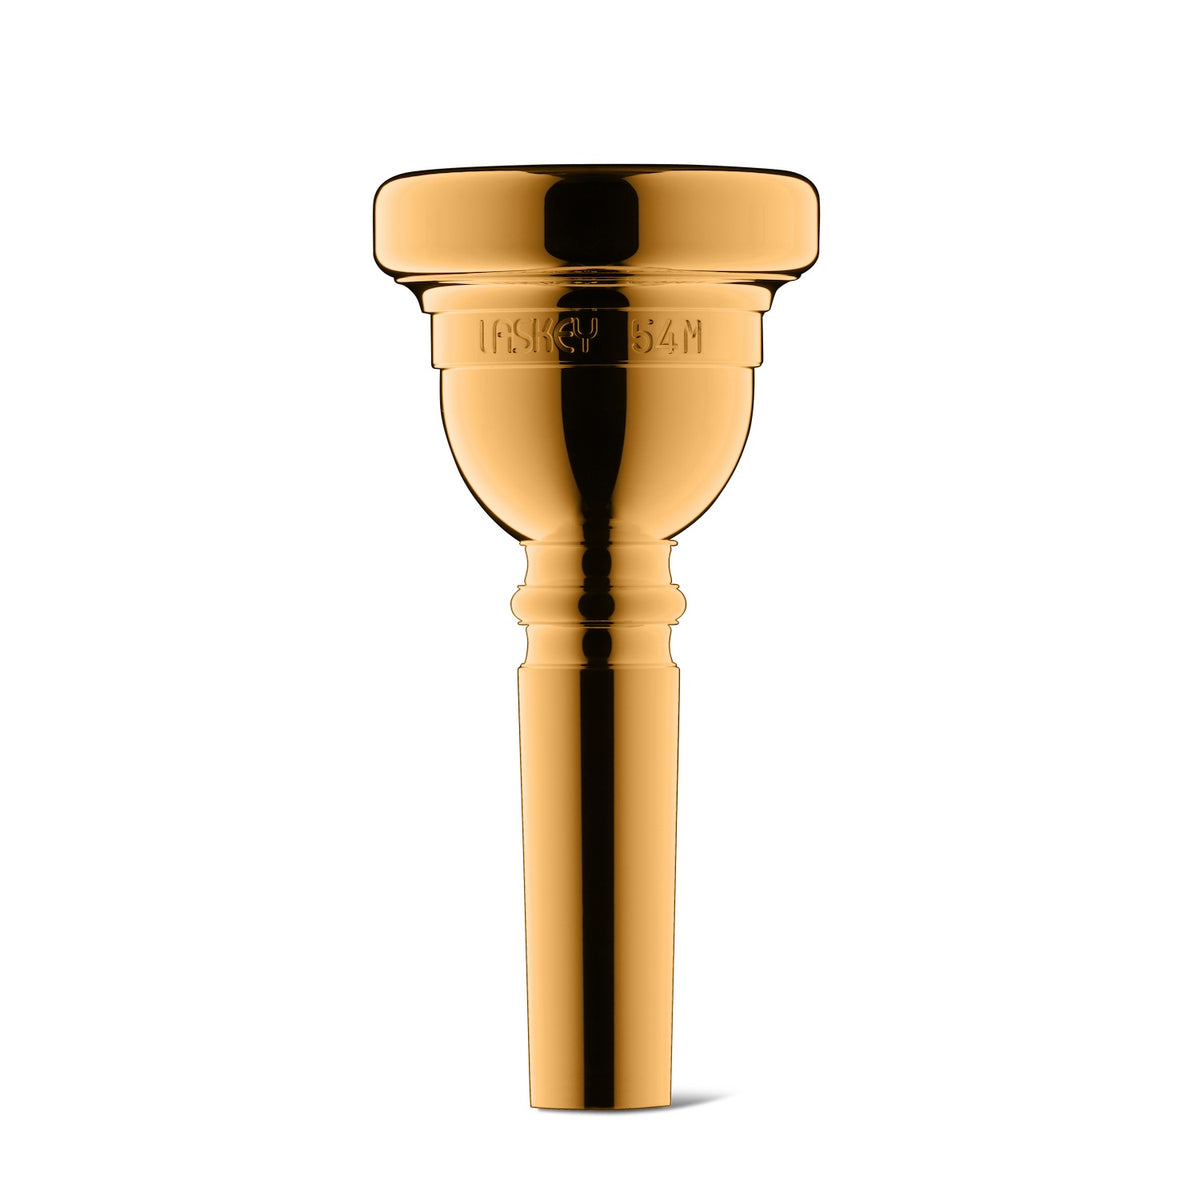 laskey-trombone-classic-mouthpiece-large-54M-gold